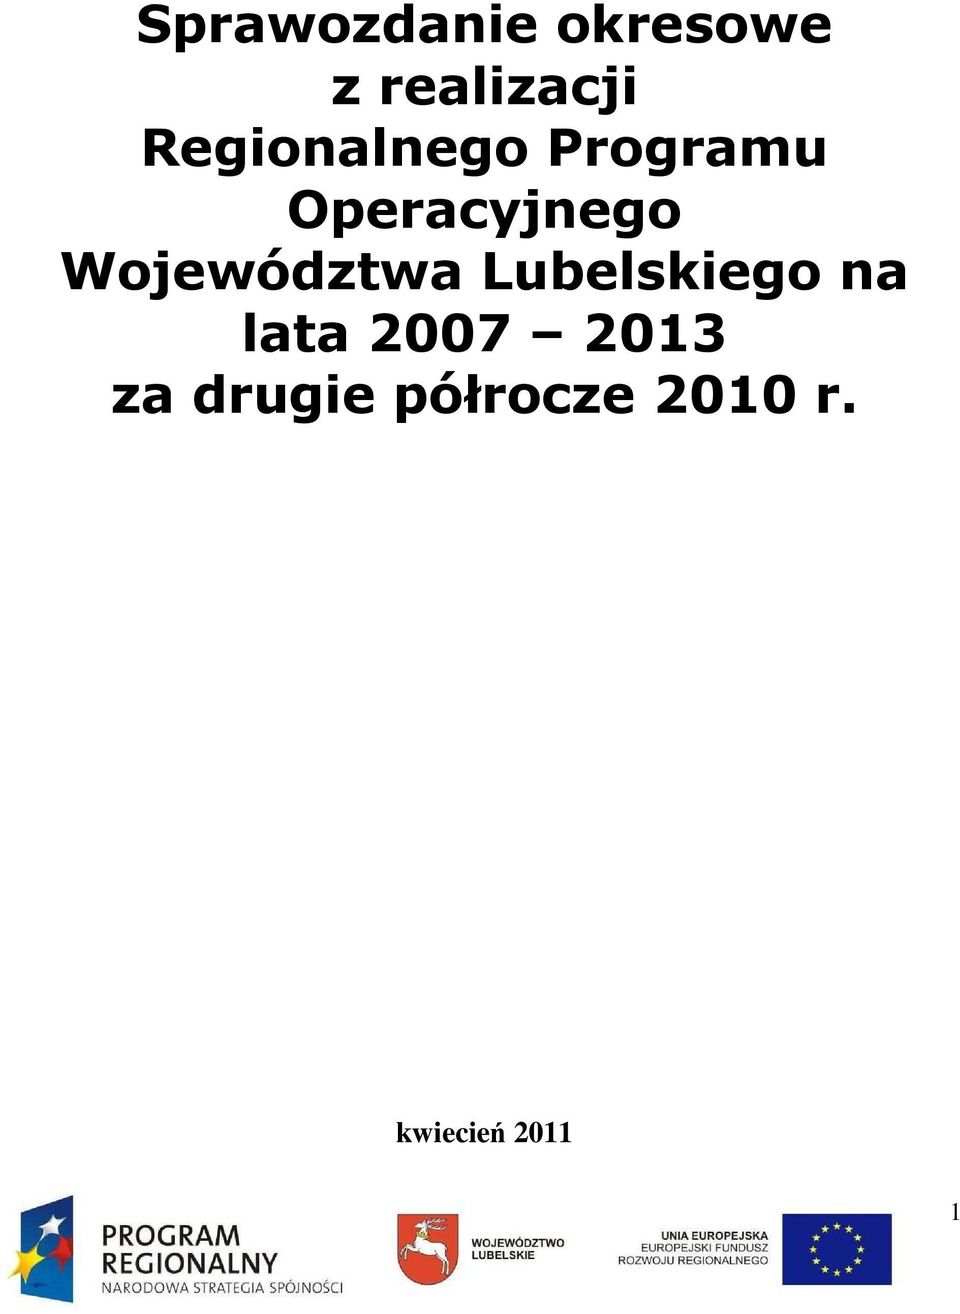 Województwa Lubelskiego na lata 2007